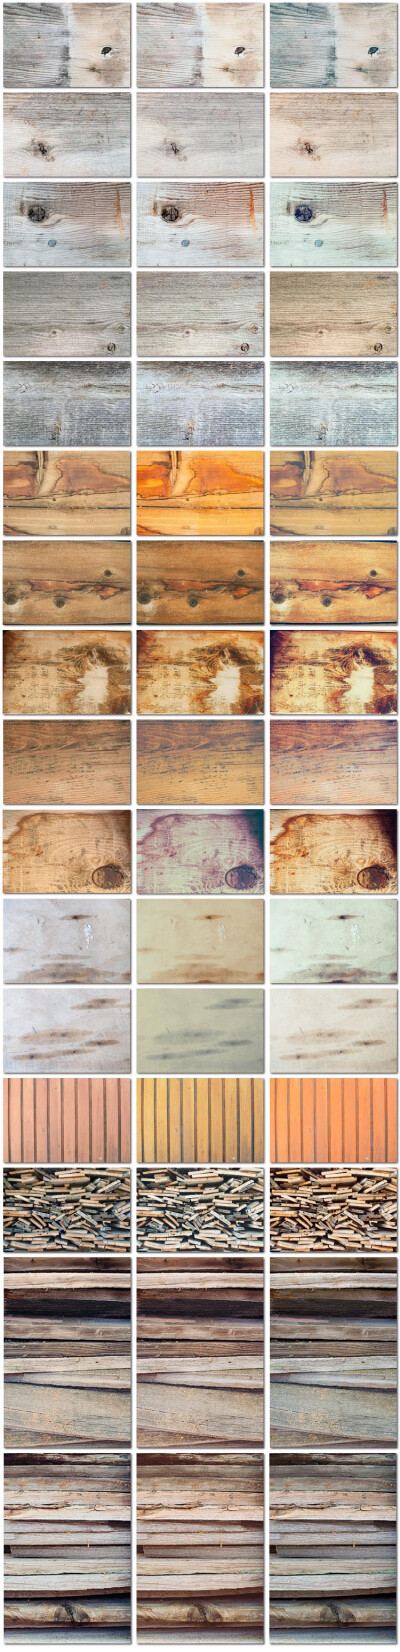 48张怀旧古典复古木质木纹木头树木年轮纹理高清海报背景模板设计素材